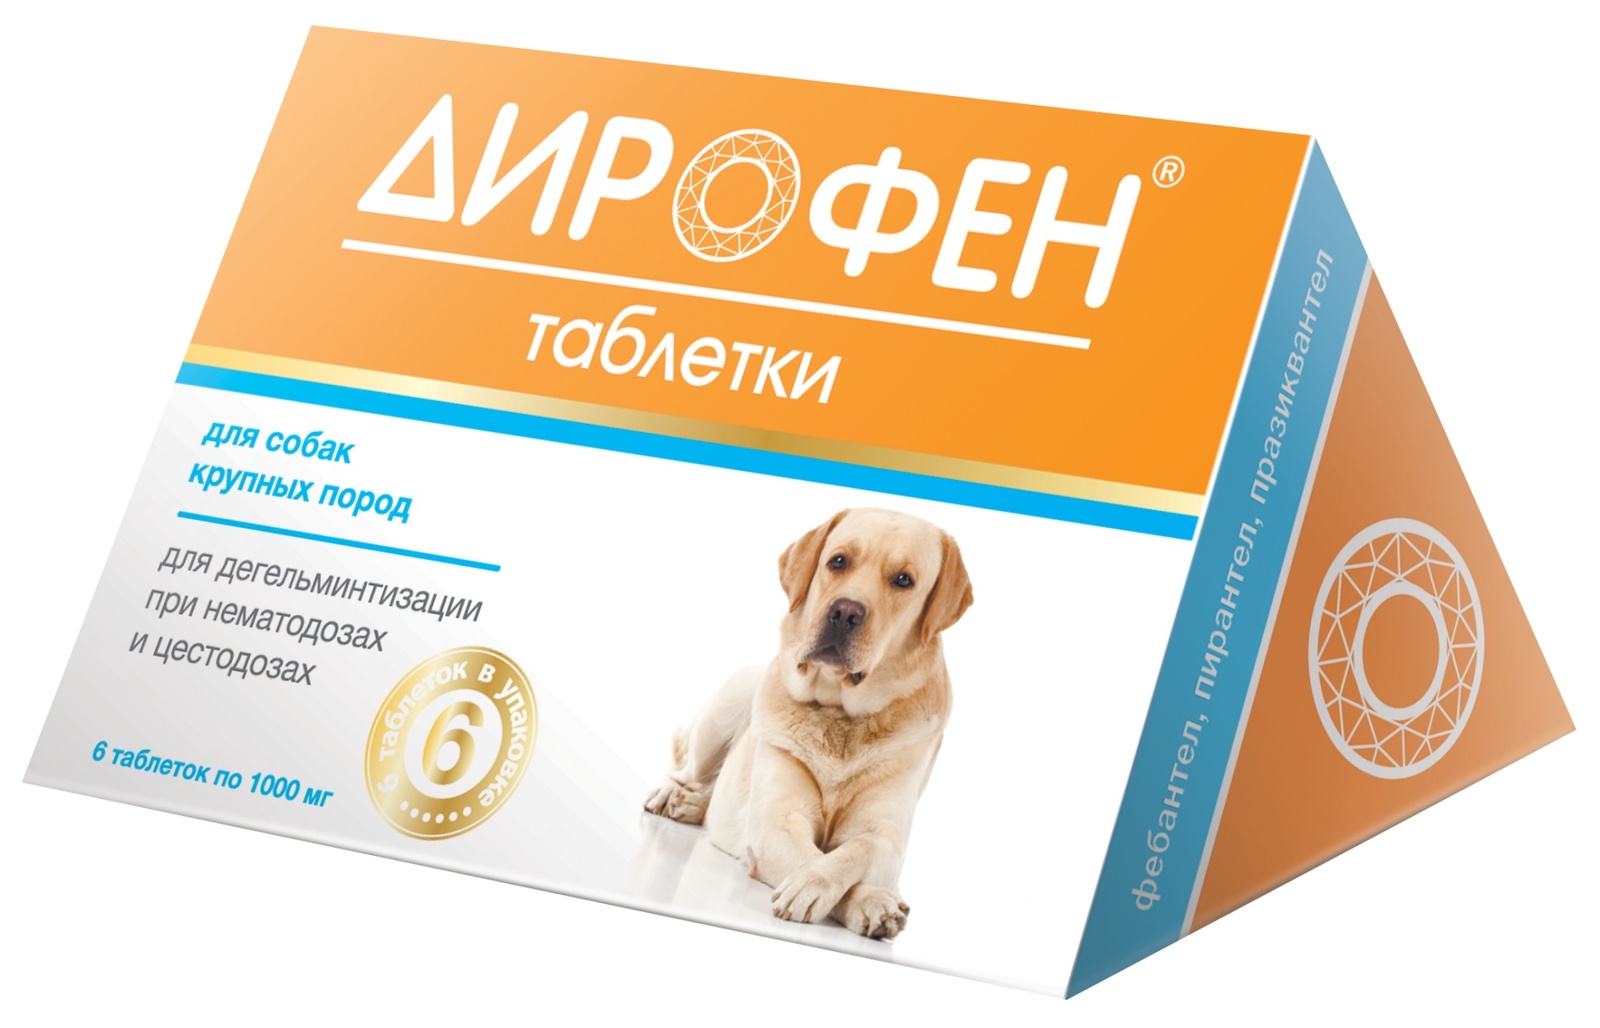 Apicenna дирофен Плюс таблетки от глистов для крупных собак (19 г)